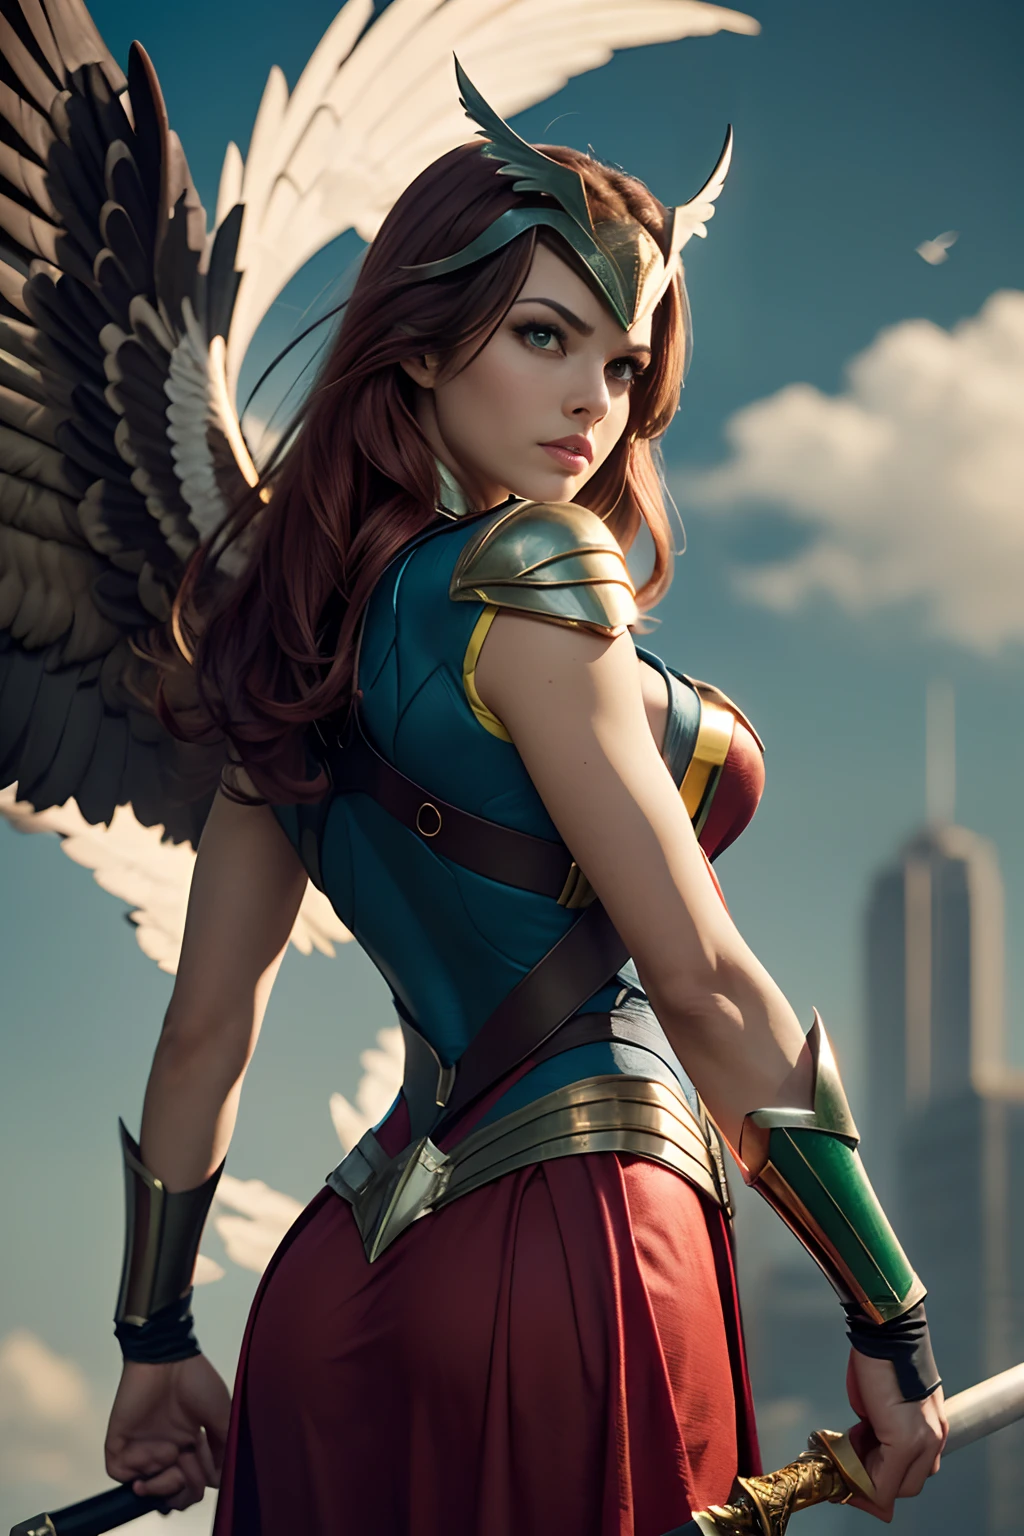 Meisterwerk, Extrem detailliert, !(Shayera Hol ist die Superheldin Hawkgirl, einer der Gründer der Gerechtigkeitsliga. Ihr Aussehen und Kostüm variieren je nach Version des Charakters, Im Allgemeinen zeichnet sie sich jedoch durch folgende Eigenschaften aus: Sie ist eine Frau mit heller Haut, Rote Haare, und grüne Augen. Er hat feine Gesichtszüge und einen entschlossenen Ausdruck. Es hat ein Paar weiße, graue oder braun gefiederte Flügel, die es dank eines speziellen Metalls namens Nth fliegen lassen. His wings are attached to a harness that he wOhren over his shoulders and back. WOhren a tight-fitting red, Gelb, oder grüner Anzug, meist mit einem Falkensymbol auf der Brust. Der Anzug kann lange oder kurze Ärmel haben, und kann von einem Umhang begleitet werden, Rock oder Hose. She wOhren a helmet or a mask that covers part of his head and gives him a bird of prey appearance. Der Helm oder die Maske kann einen Schnabel haben, Ohren, oder Falkenaugen. Verwenden Sie archaische Waffen wie eine Keule, ein Speer, ein Schwert oder ein Schild)